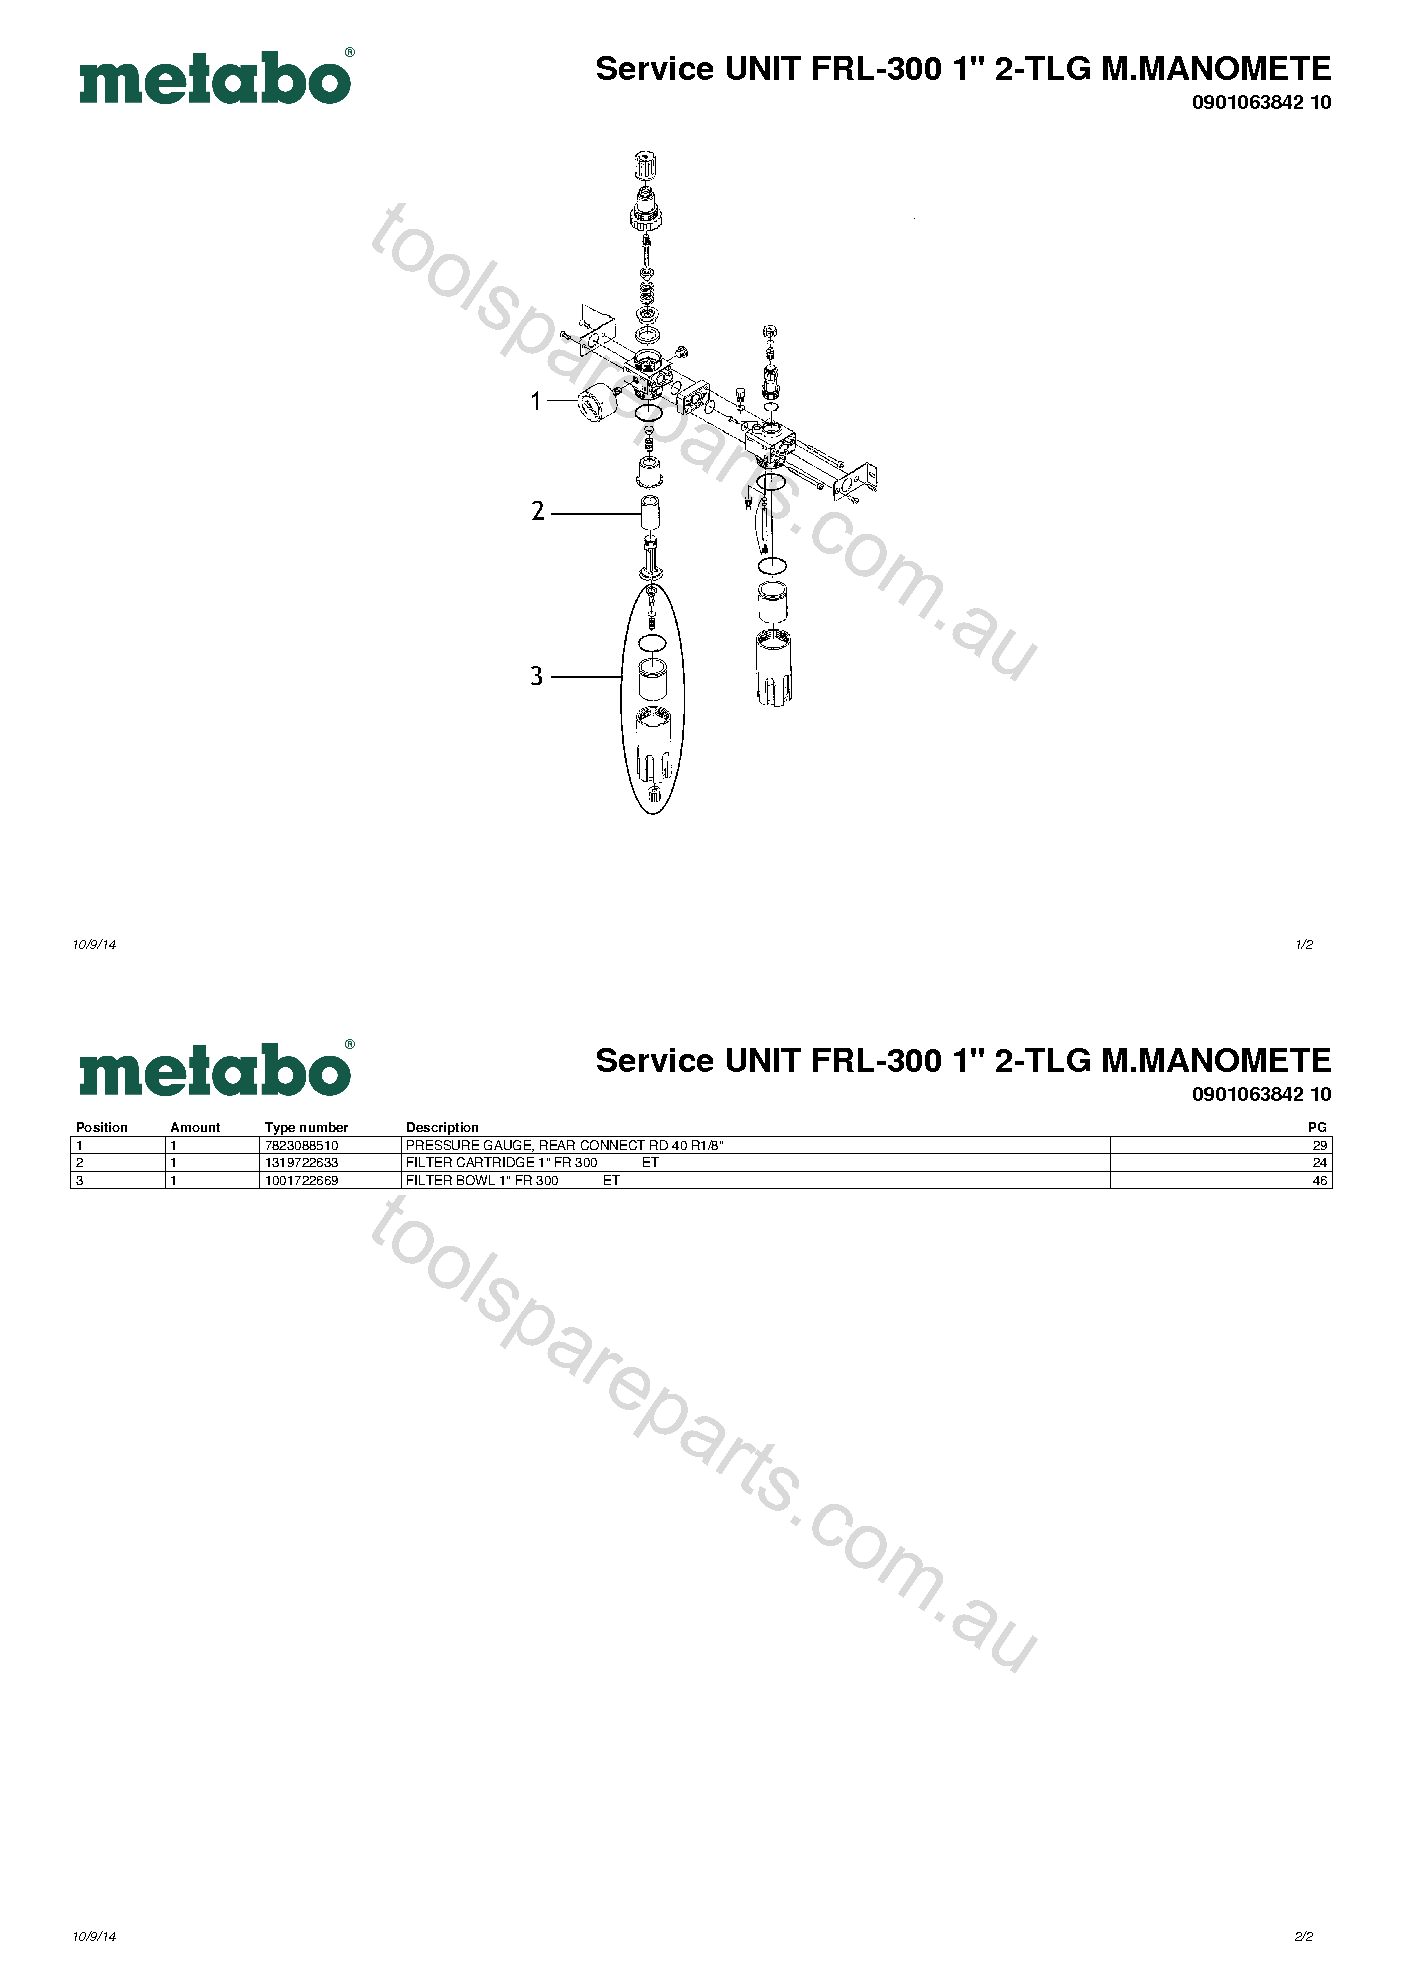 Metabo Service UNIT FRL-300 1